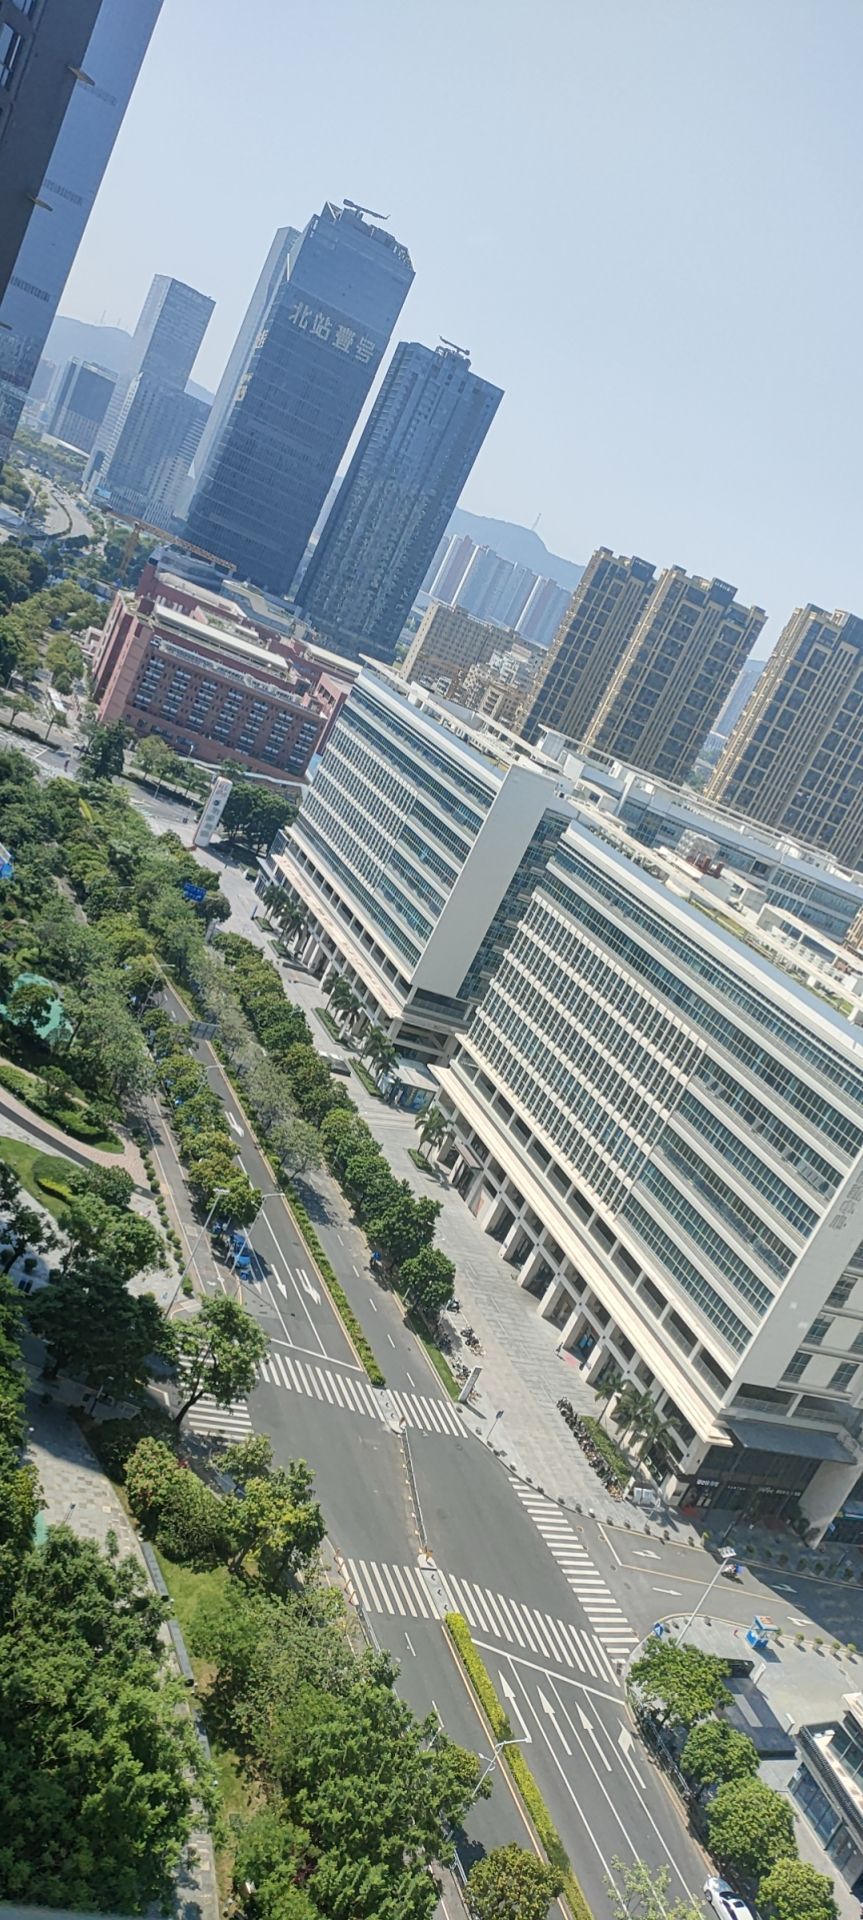 龍華區的高鐵深圳北站周邊路上幾近無人。讀者提供